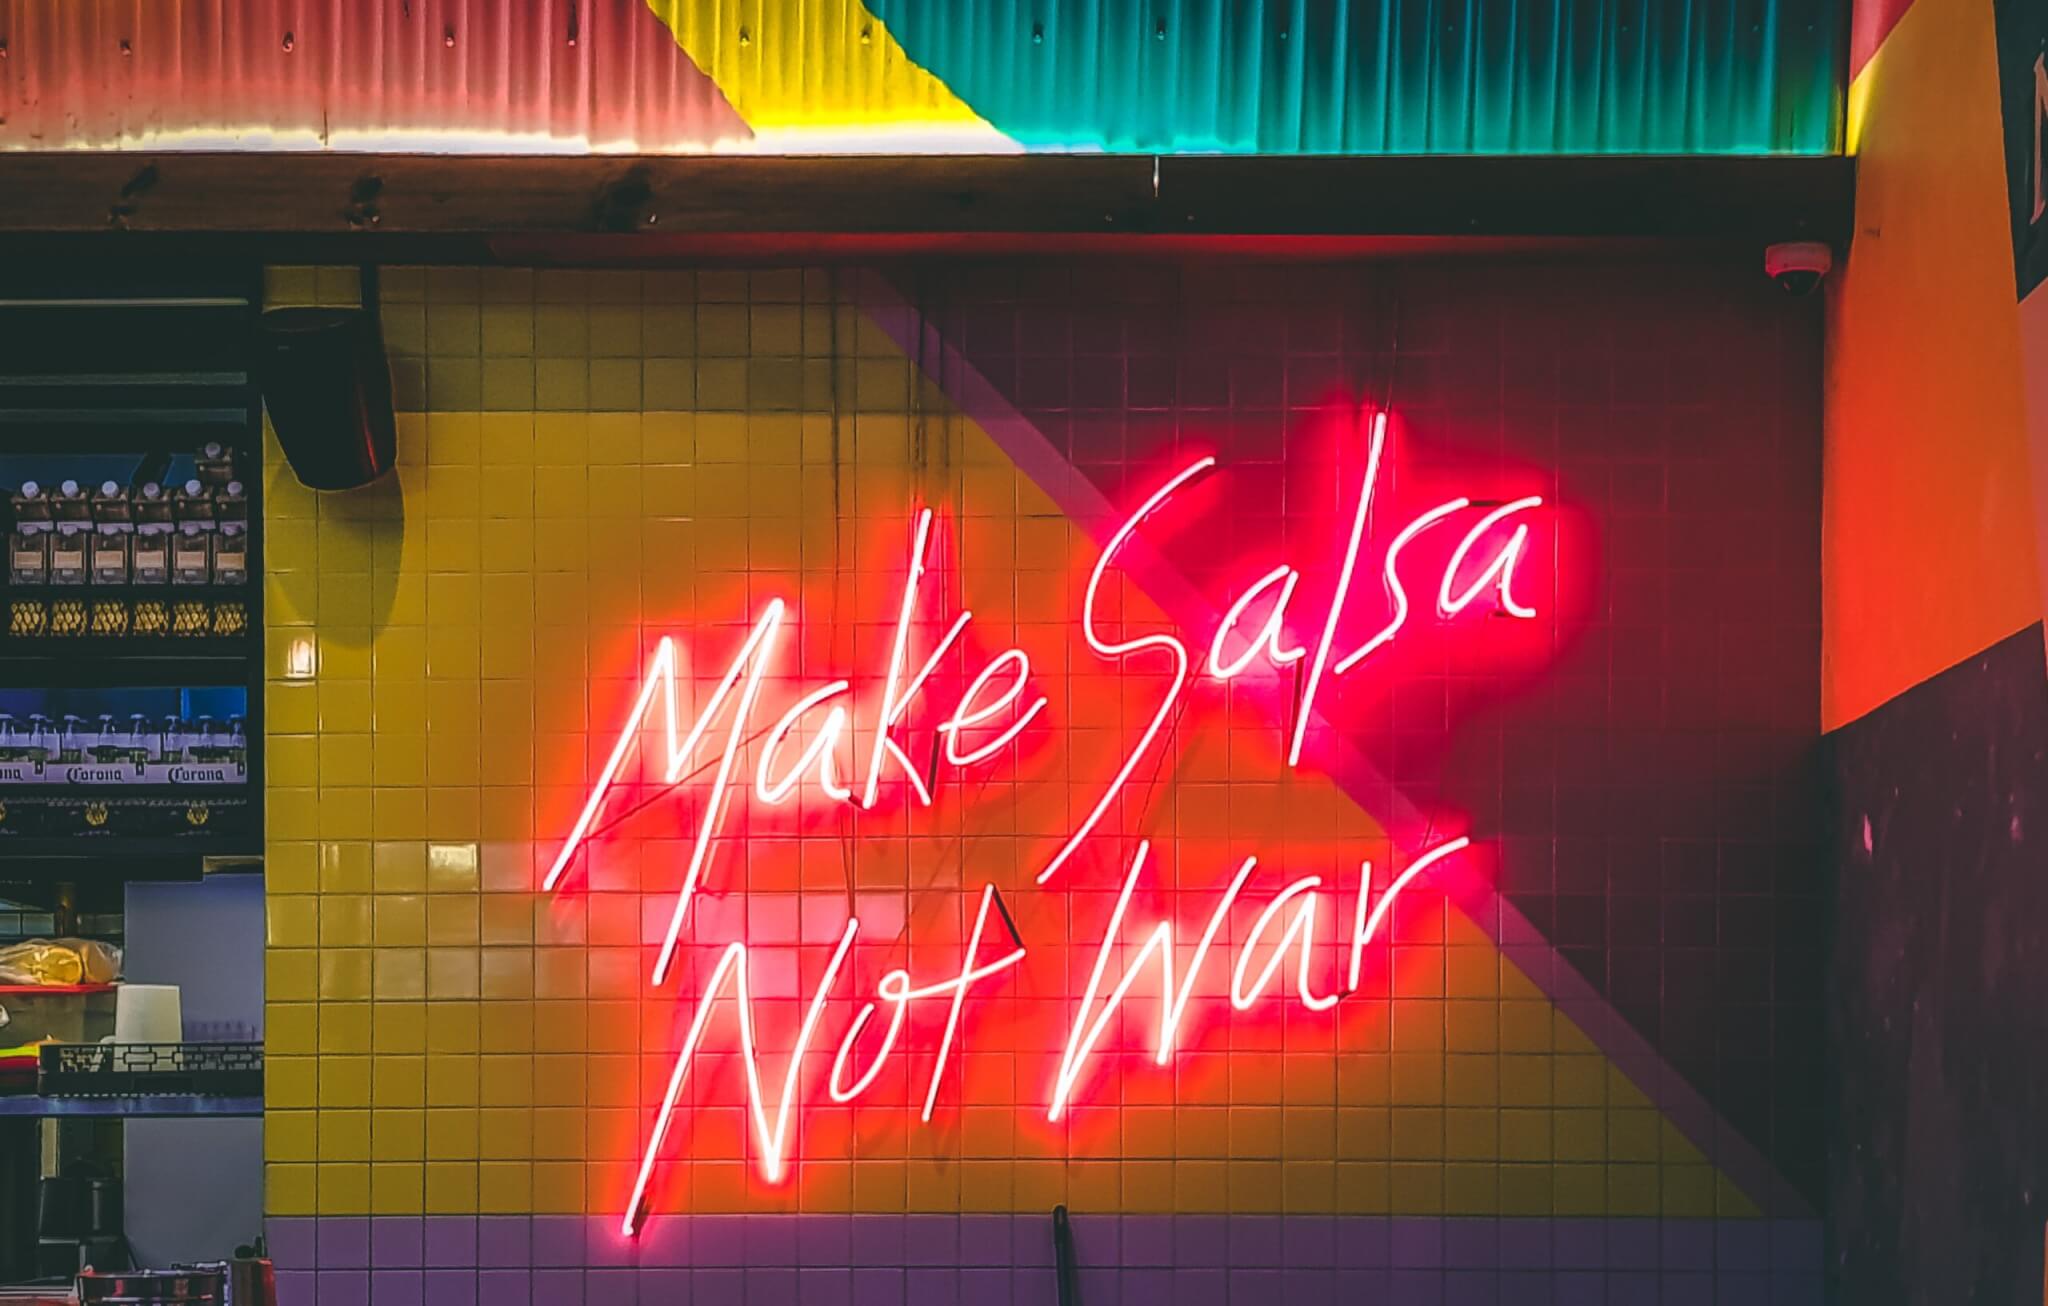 Make Salsa Not War sign